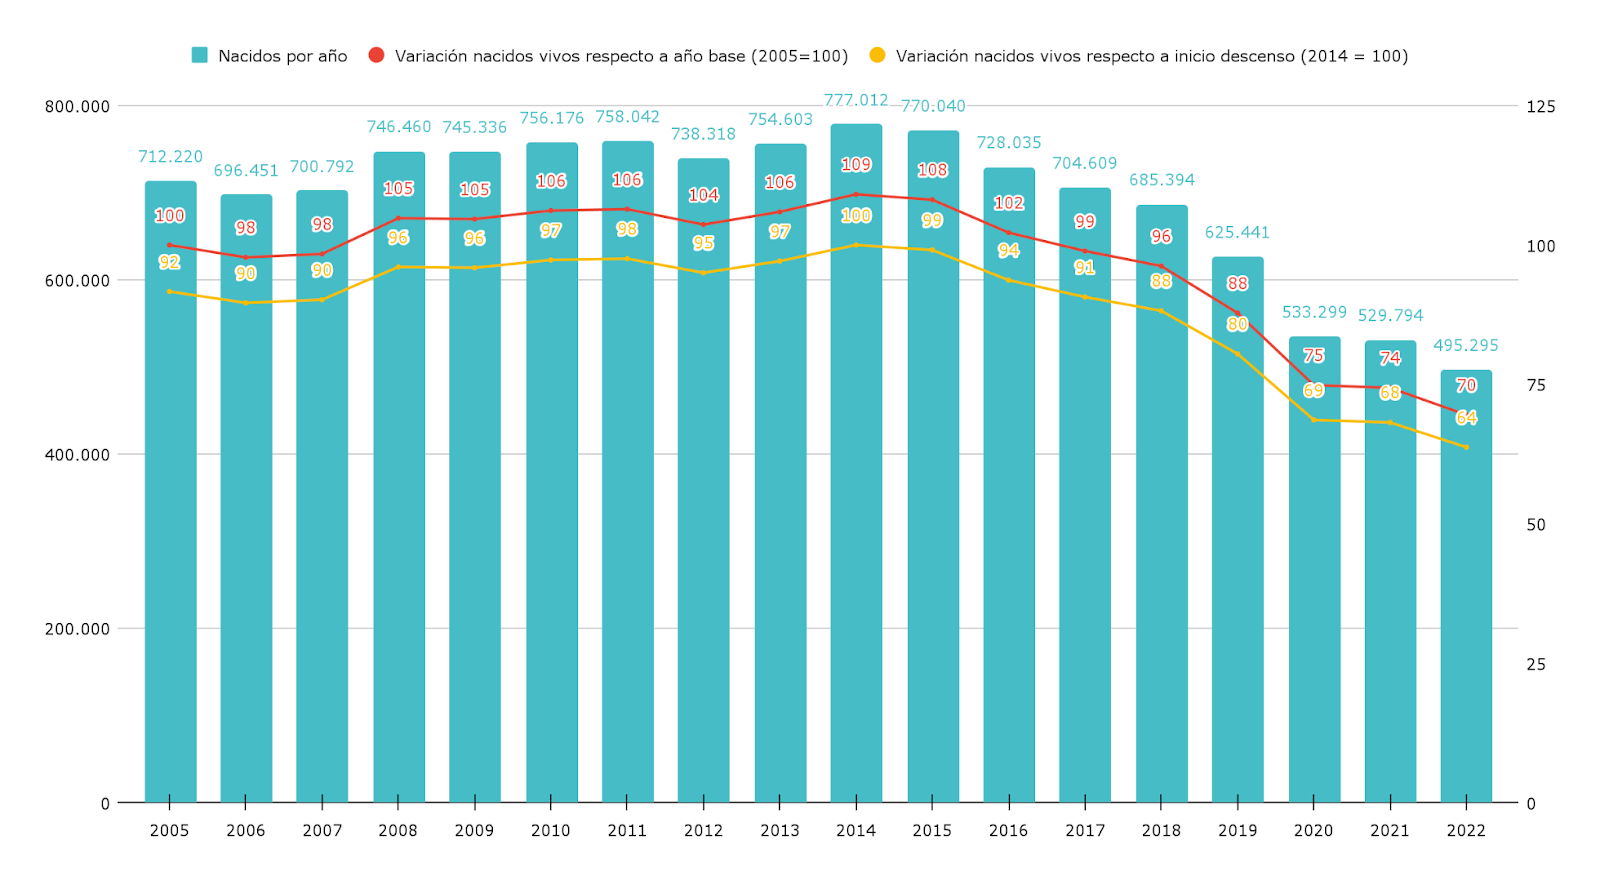 Gráfico 1. Cantidad de nacidos vivos por año y variación de los mismos respecto al año base (2005) y al inicio del descenso (2014). Serie 2005 - 2022.